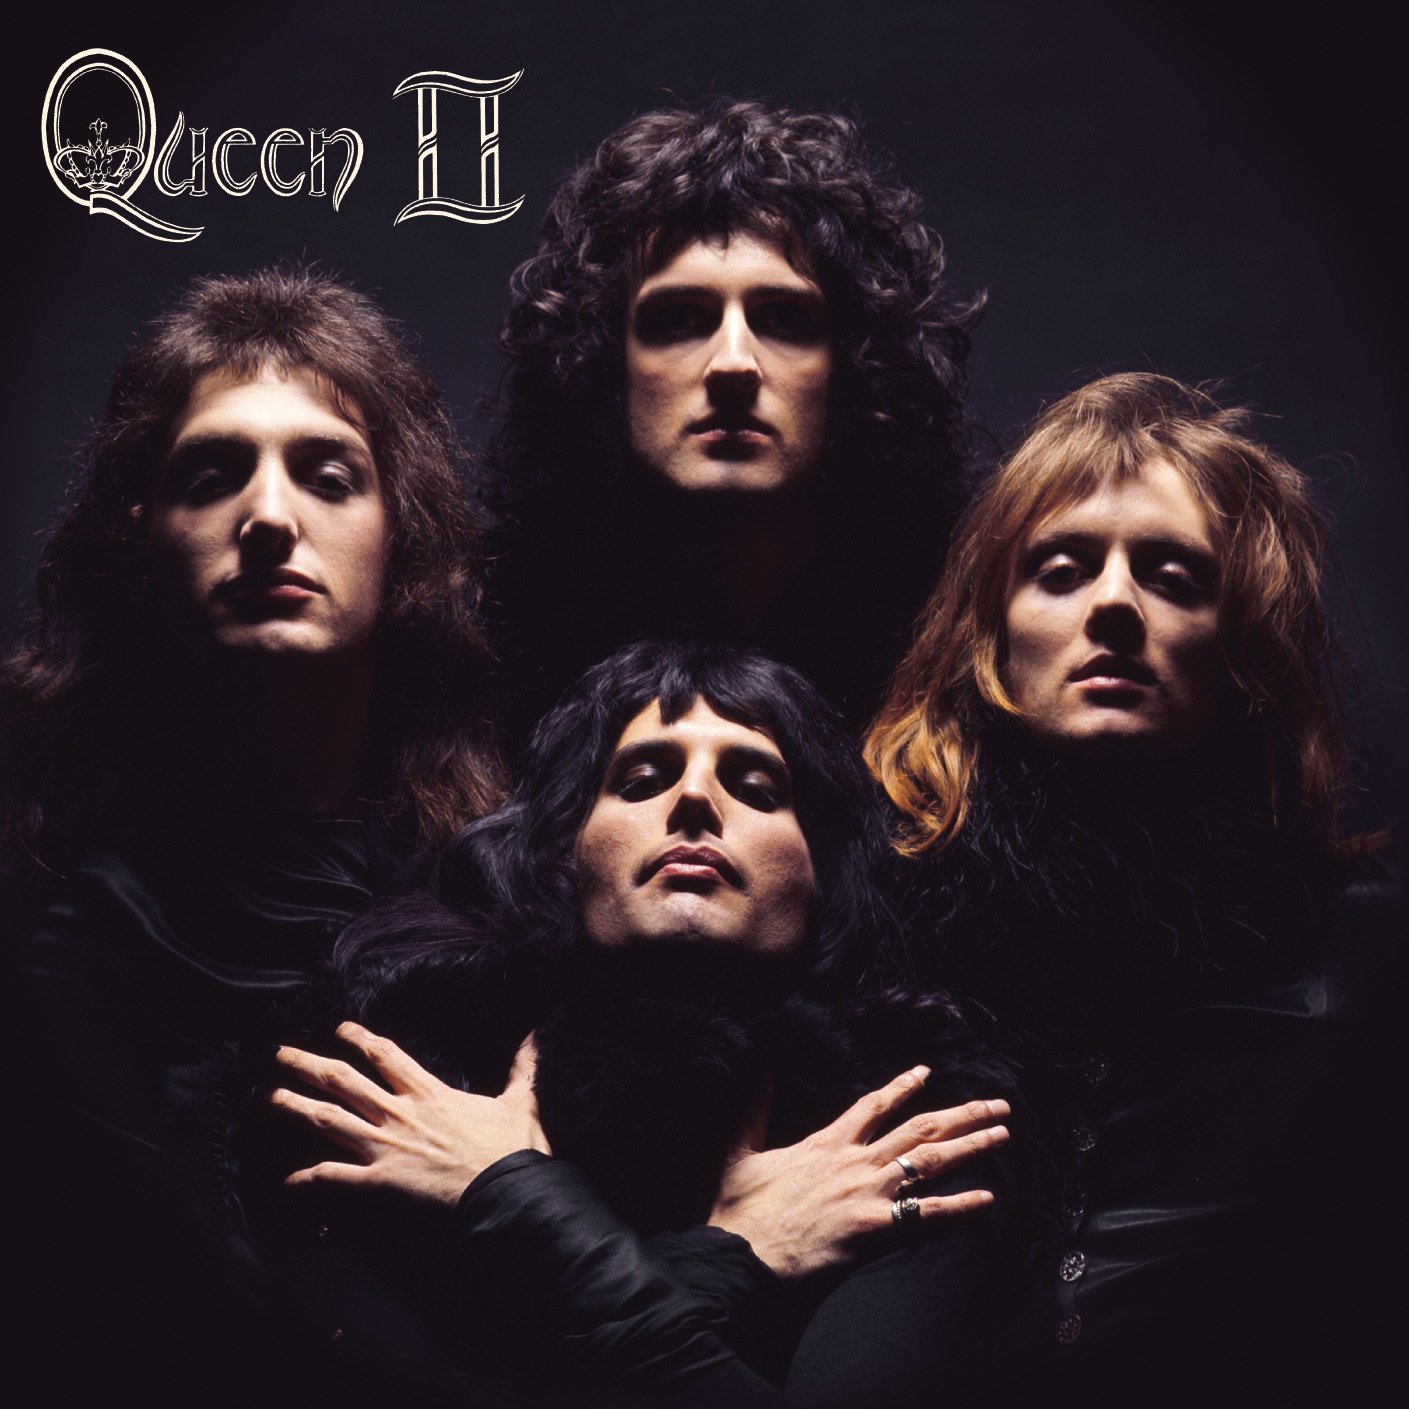 Audio Cd Queen - Queen II (2 Cd) NUOVO SIGILLATO, EDIZIONE DEL 19/05/2021 SUBITO DISPONIBILE